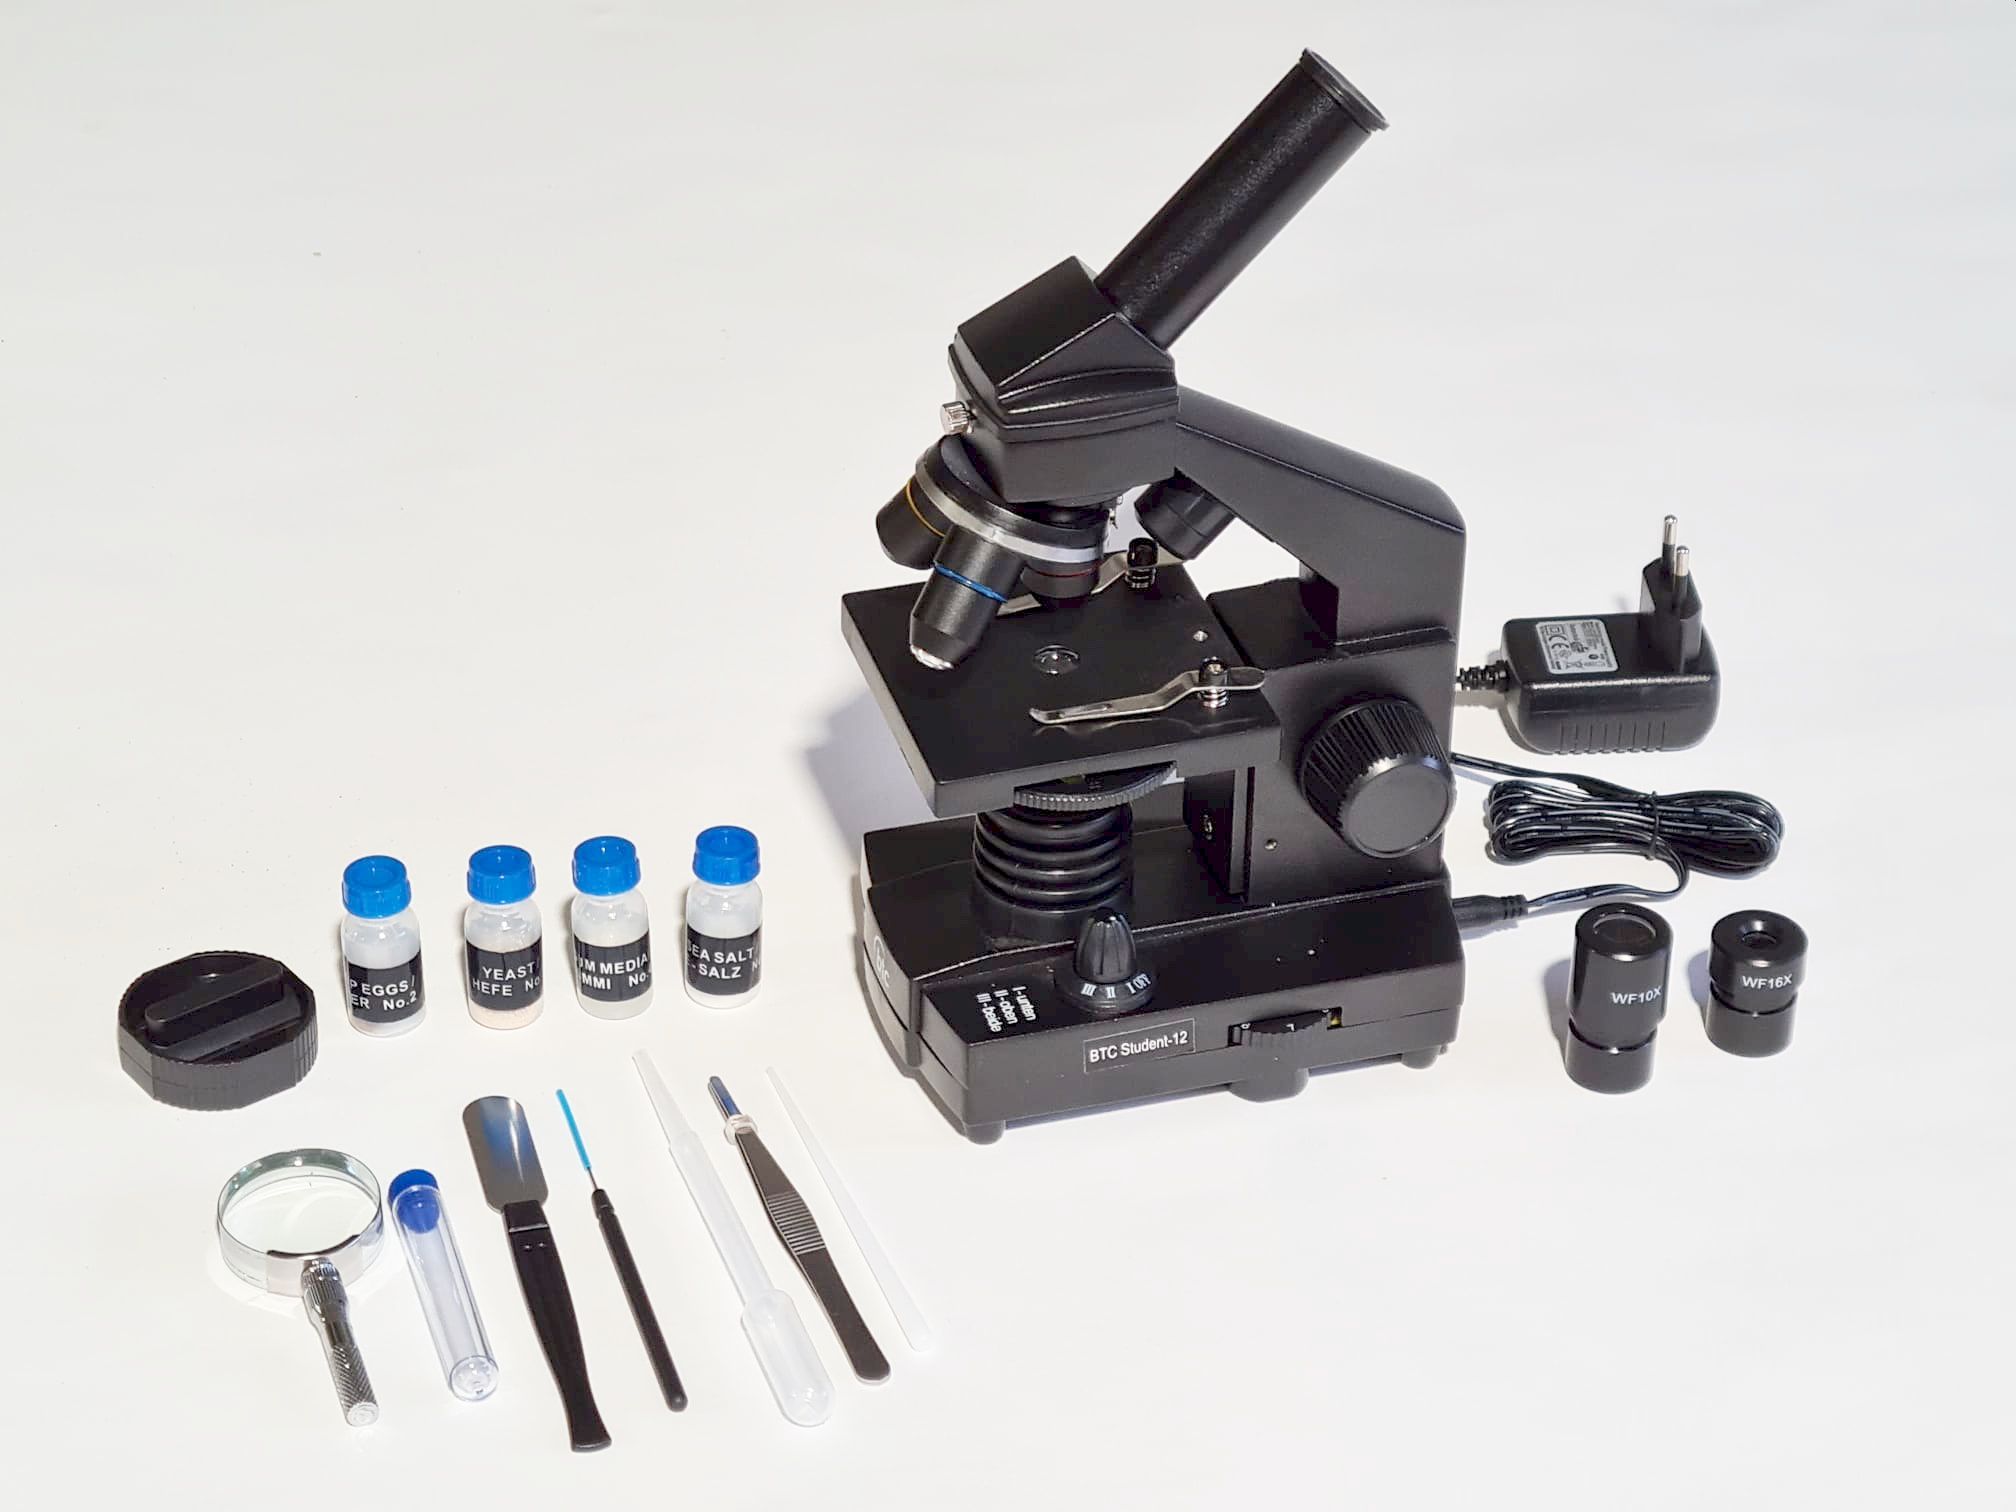 Student-12 mono mikroszkóp, 4x, 10x és 40x objektívvel, 45 fokos betekintéssel, diafragmával, két okulárral és változtatható al